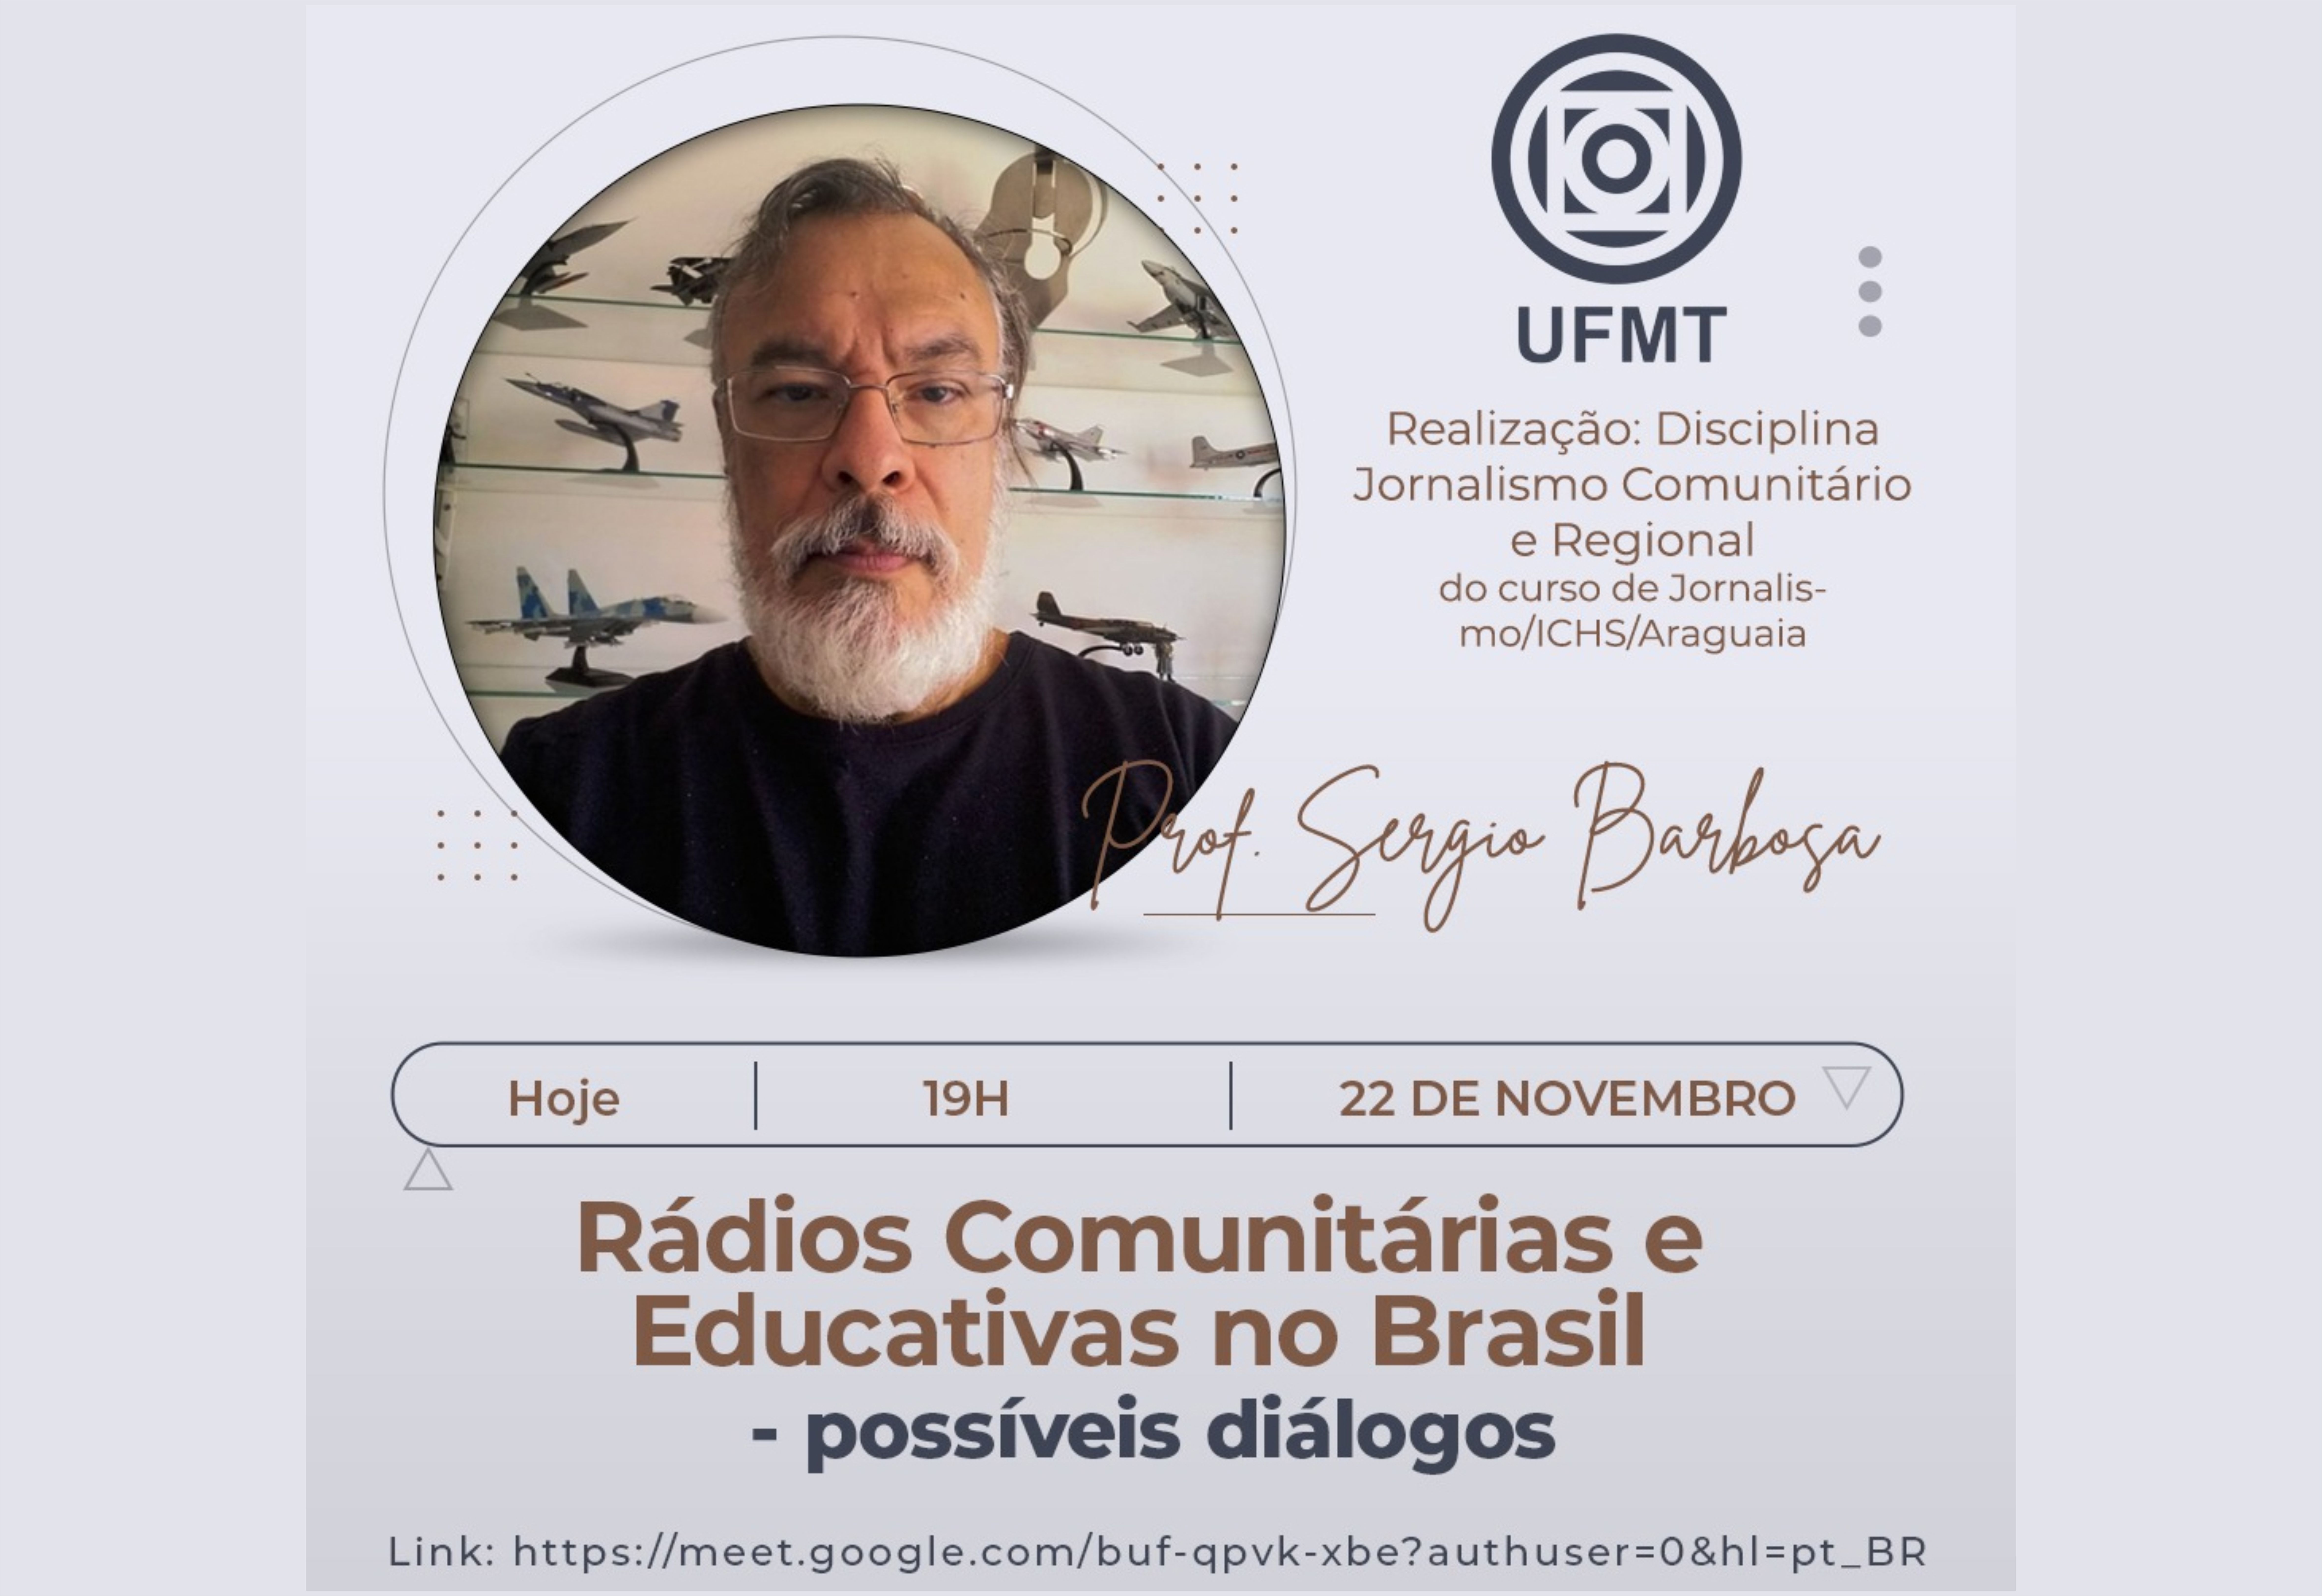 Docente da UniFAI participa de diálogo sobre emissoras educativas e comunitárias na UFMT; Prof. Me. Sérgio Barbosa desenvolve atividades pedagógicas nos cursos de Administração, Design e Publicidade da UniFAI e, também, como colaborador na Rádio Cultura FM
